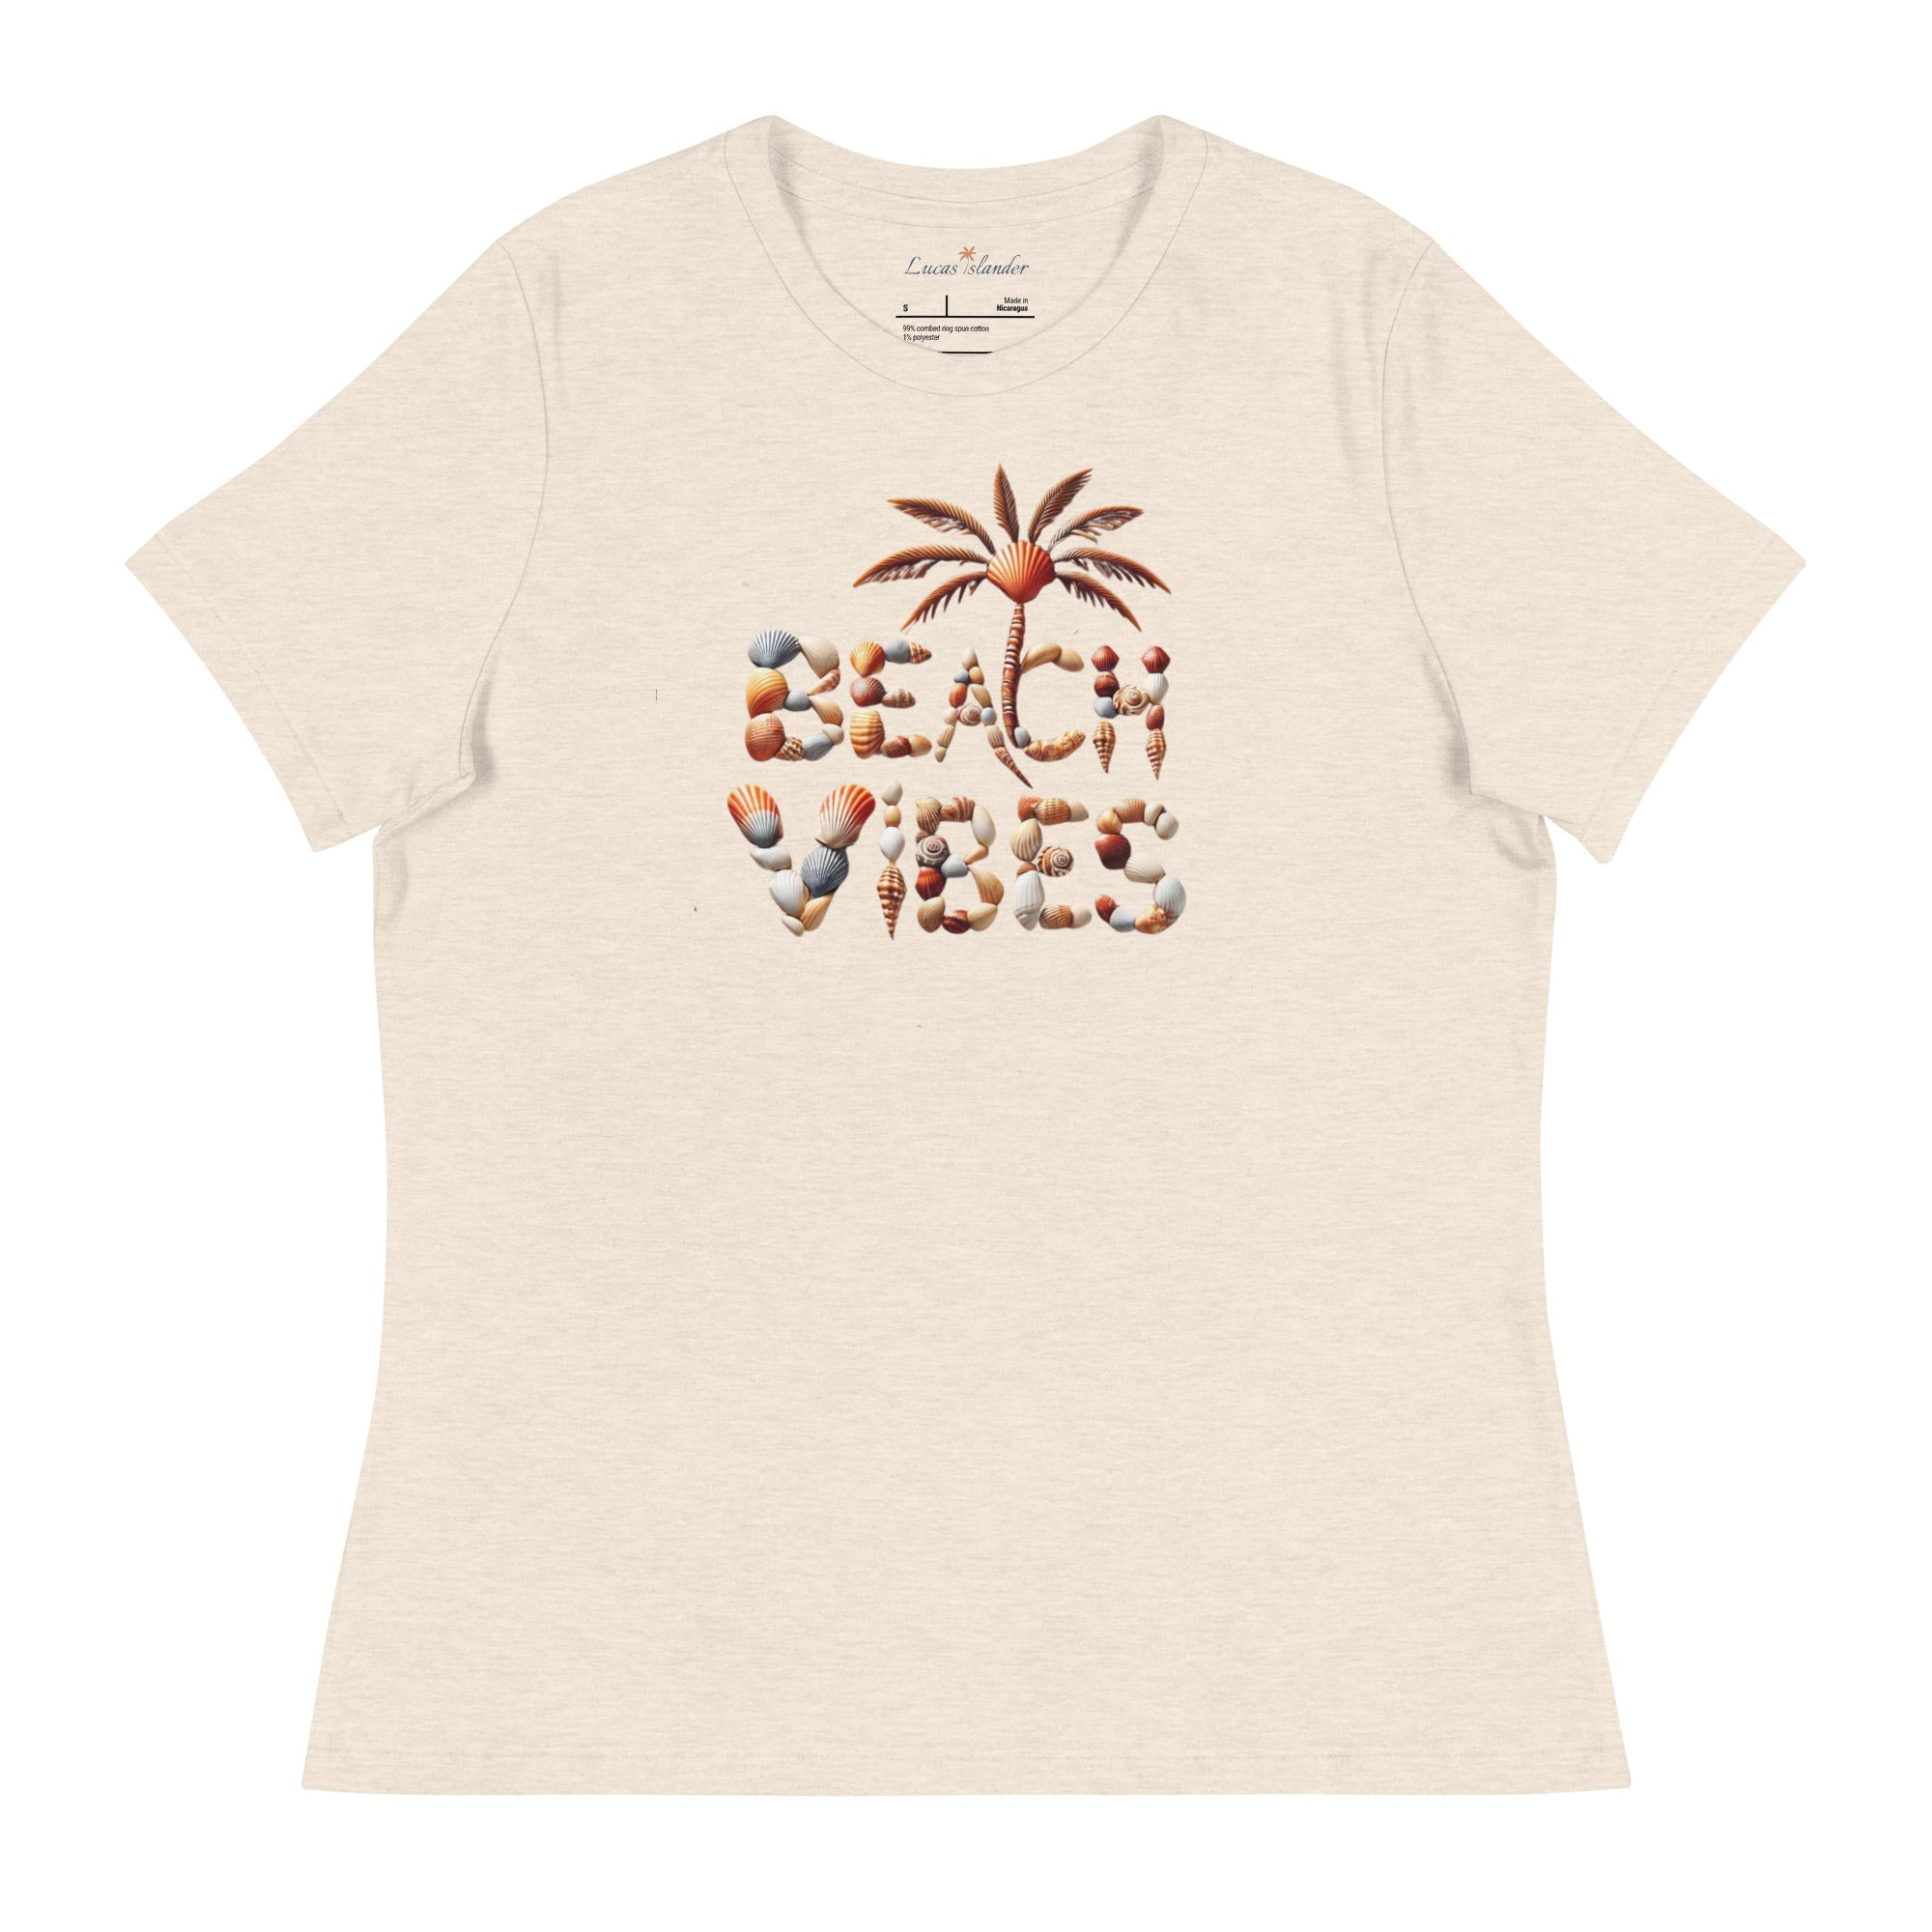 Explore Coastal Comfort: Beach Vibes Women's T-Shirt | Lucas Islander Relaxed T-Shirt